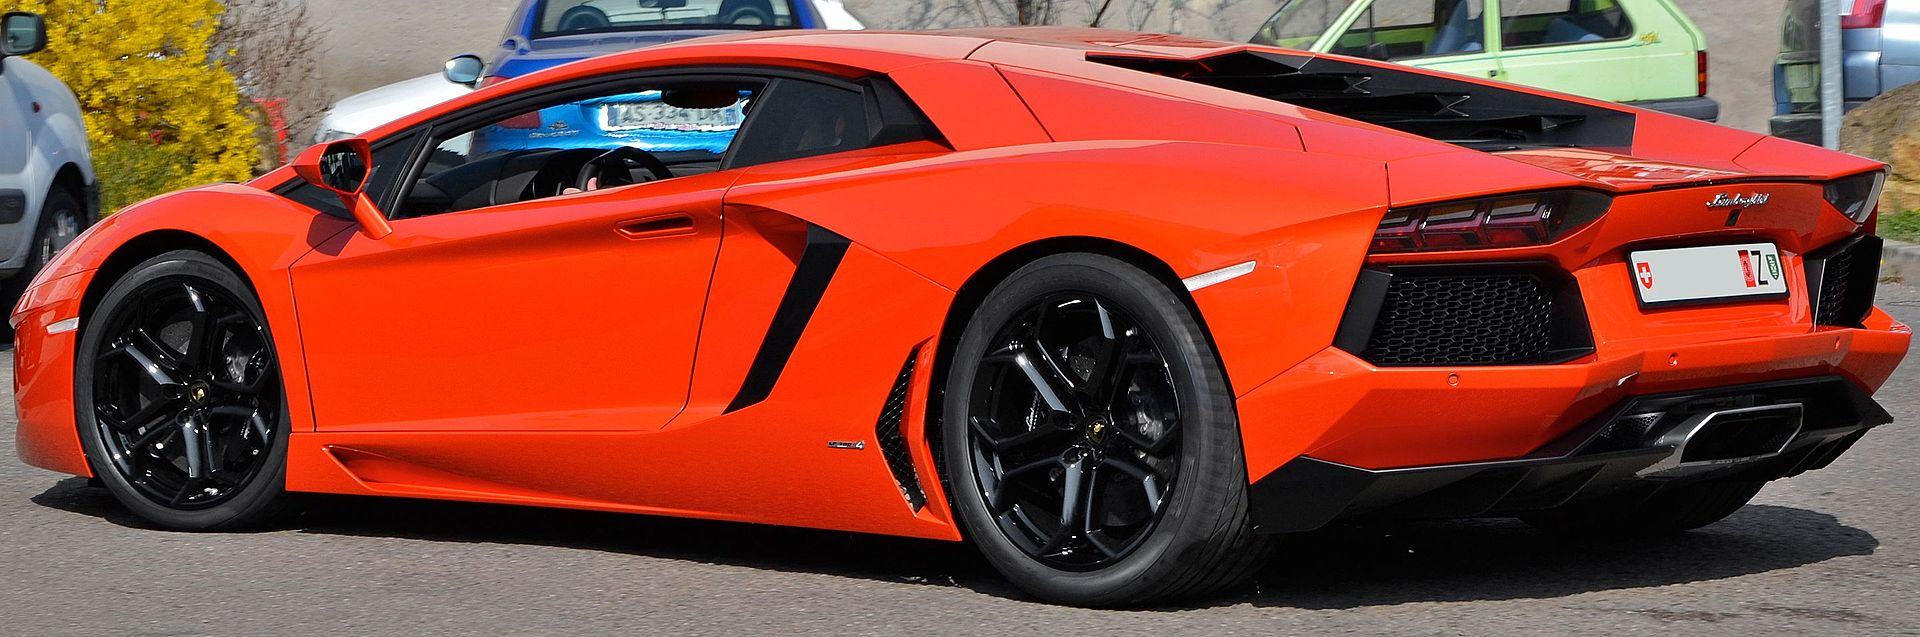 Lamborghini_Aventador_LP_700-4_muaxegiatot-vn